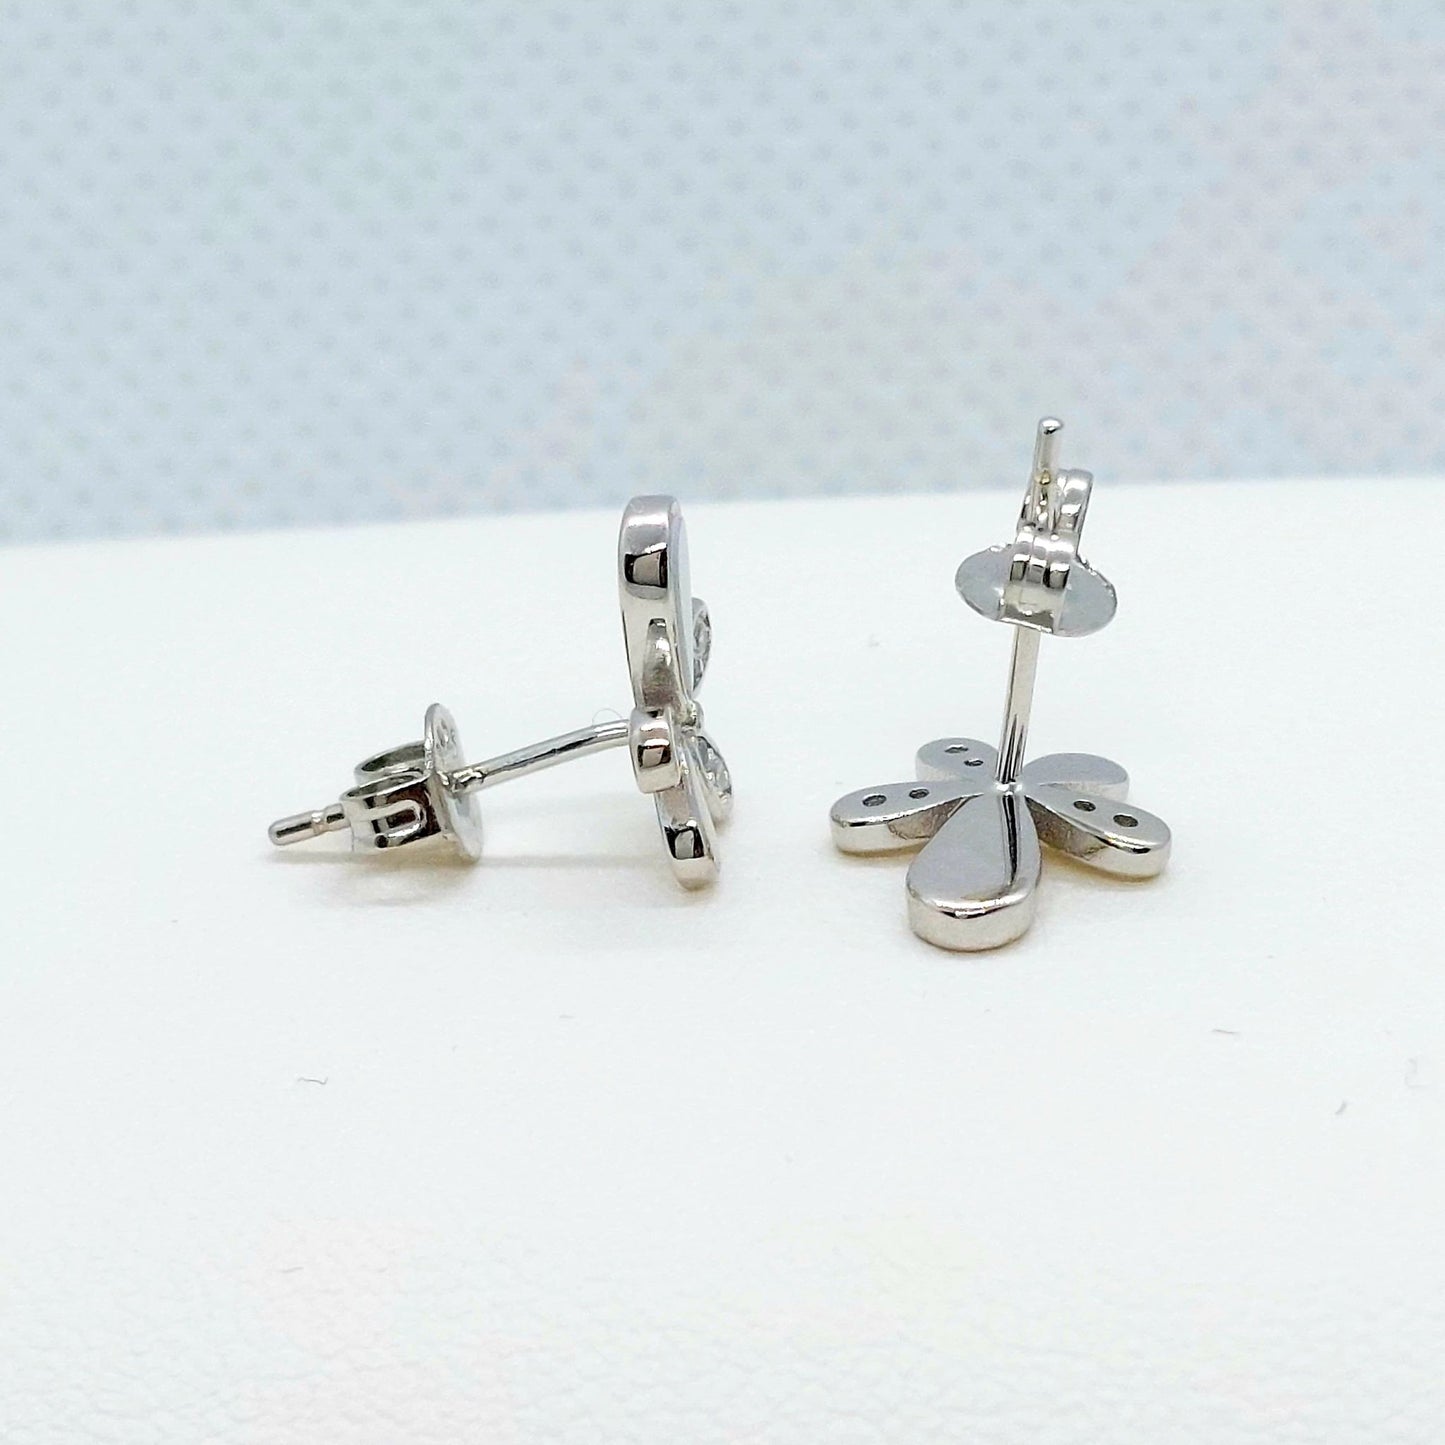 Zircon Flower Stud Earrings - Sterling Silver